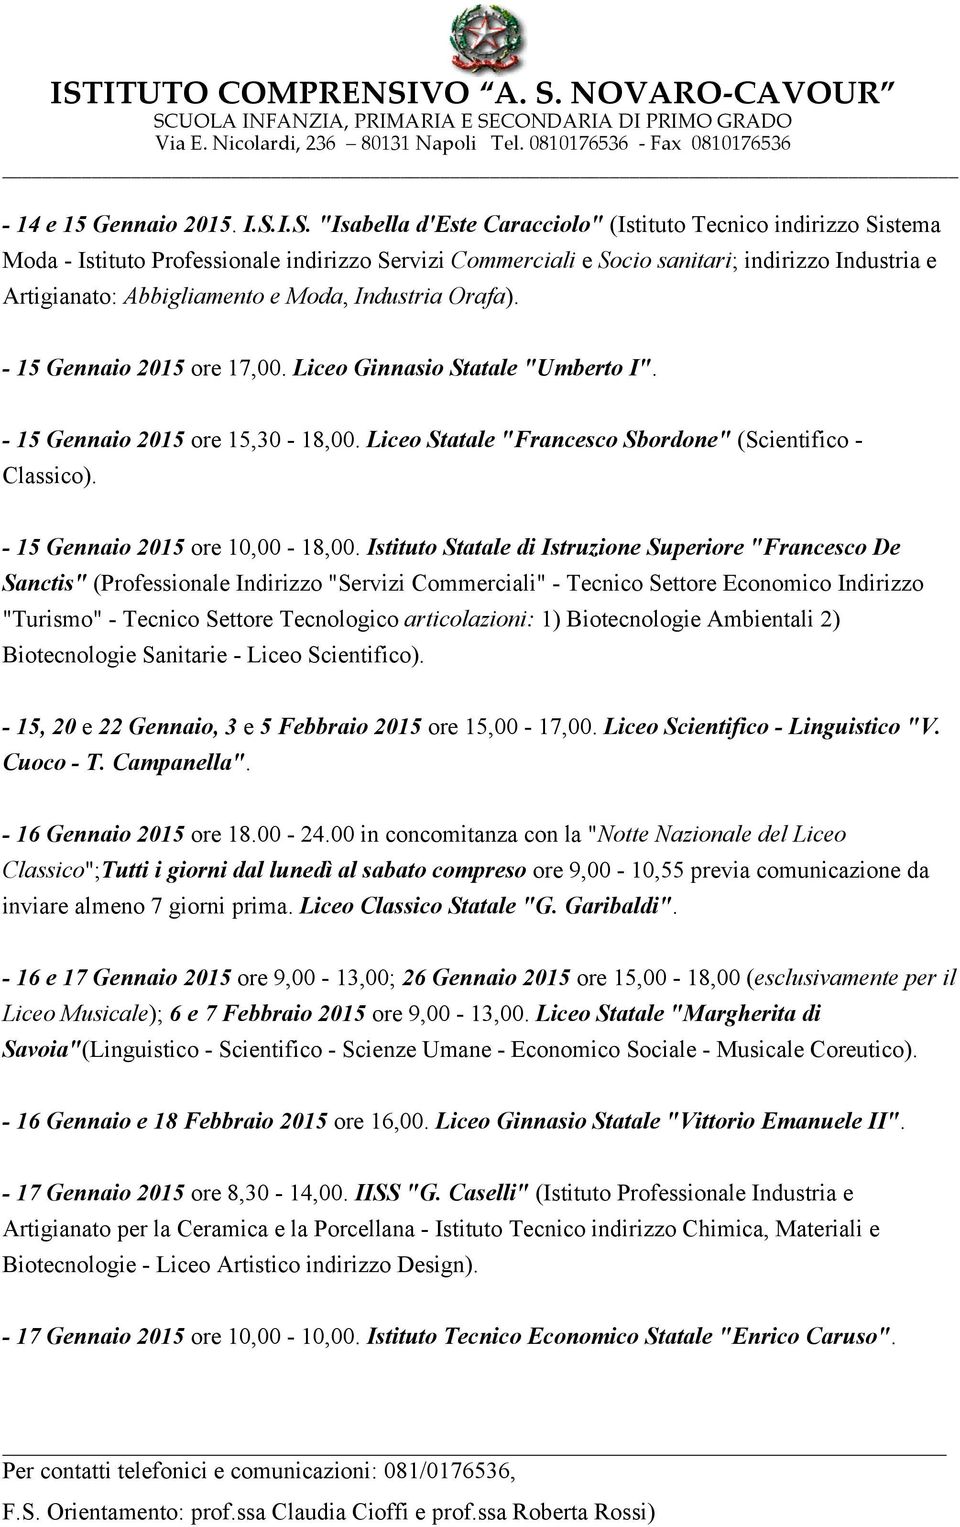 Moda, Industria Orafa). - 15 Gennaio 2015 ore 17,00. Liceo Ginnasio Statale "Umberto I". - 15 Gennaio 2015 ore 15,30-18,00. Liceo Statale "Francesco Sbordone" (Scientifico - Classico).